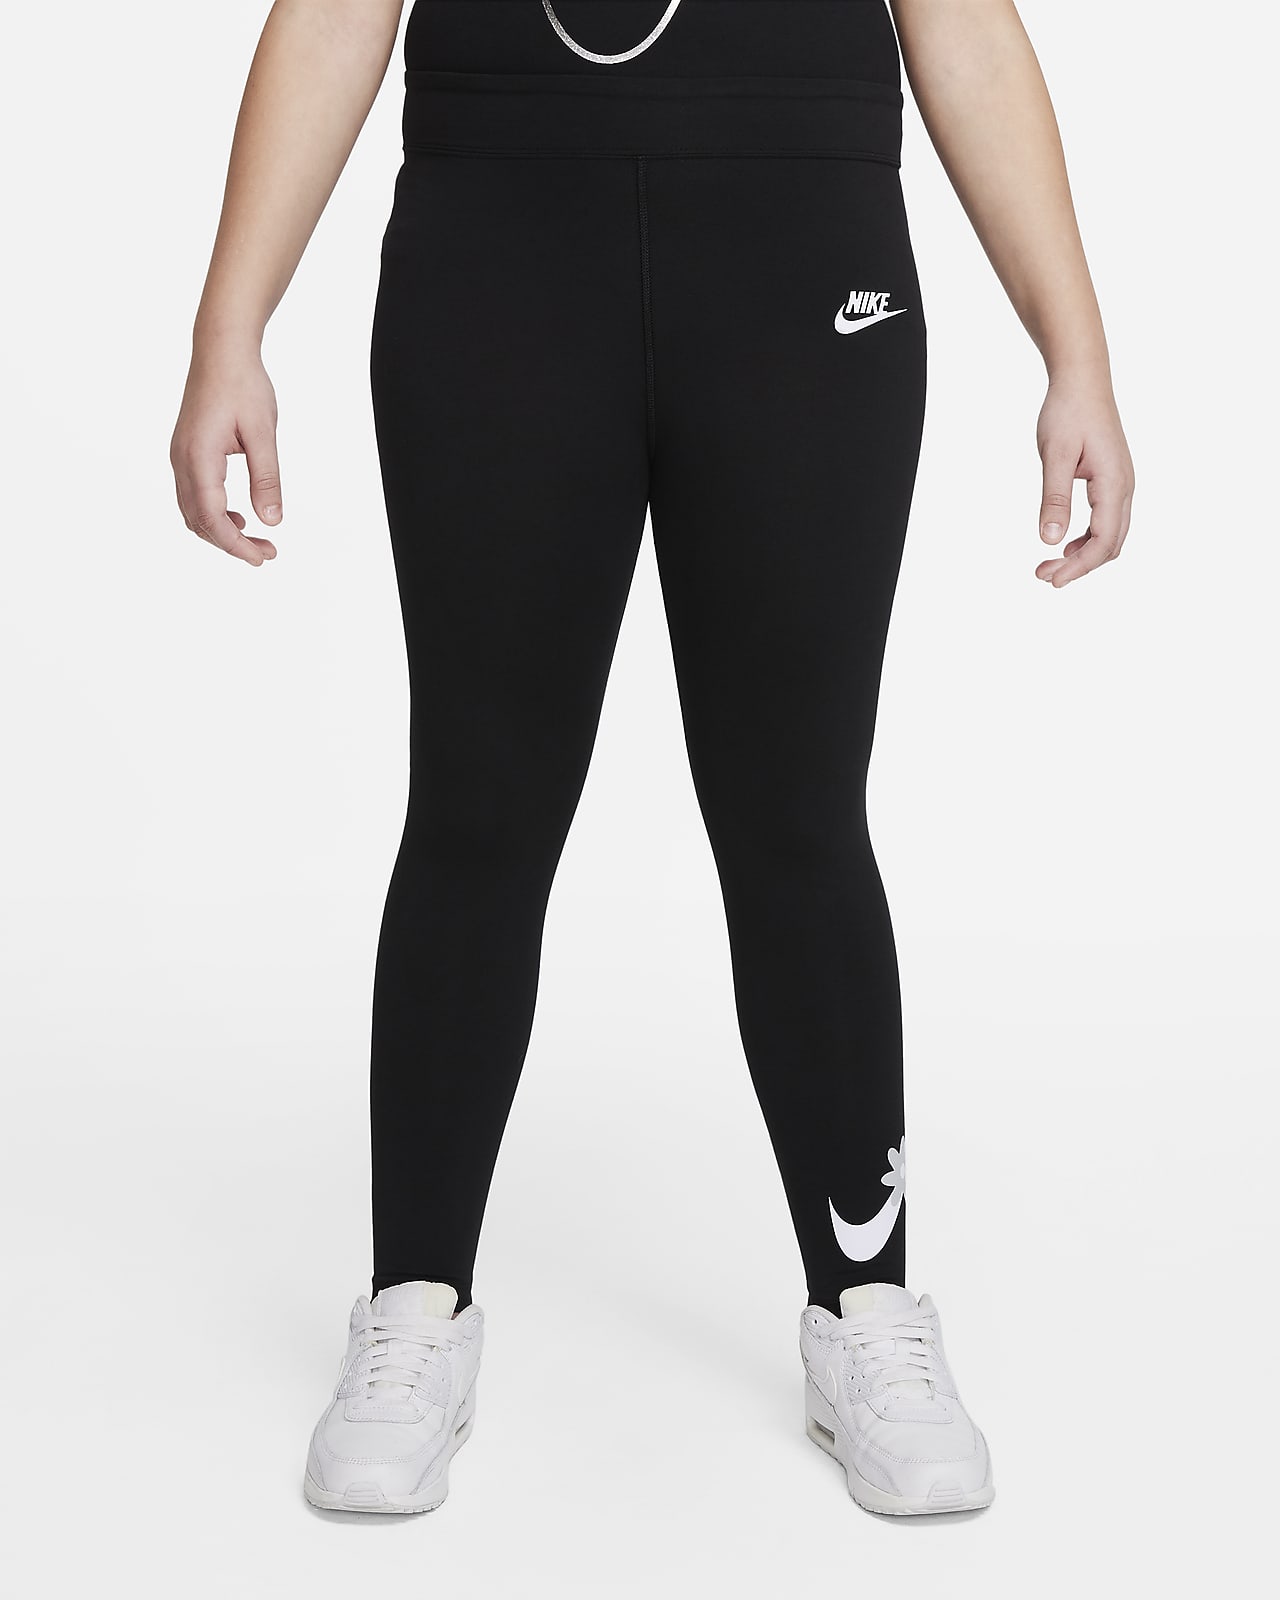 Nike Sportswear Essentials Leggings für ältere Kinder (Mädchen) (große Größe)